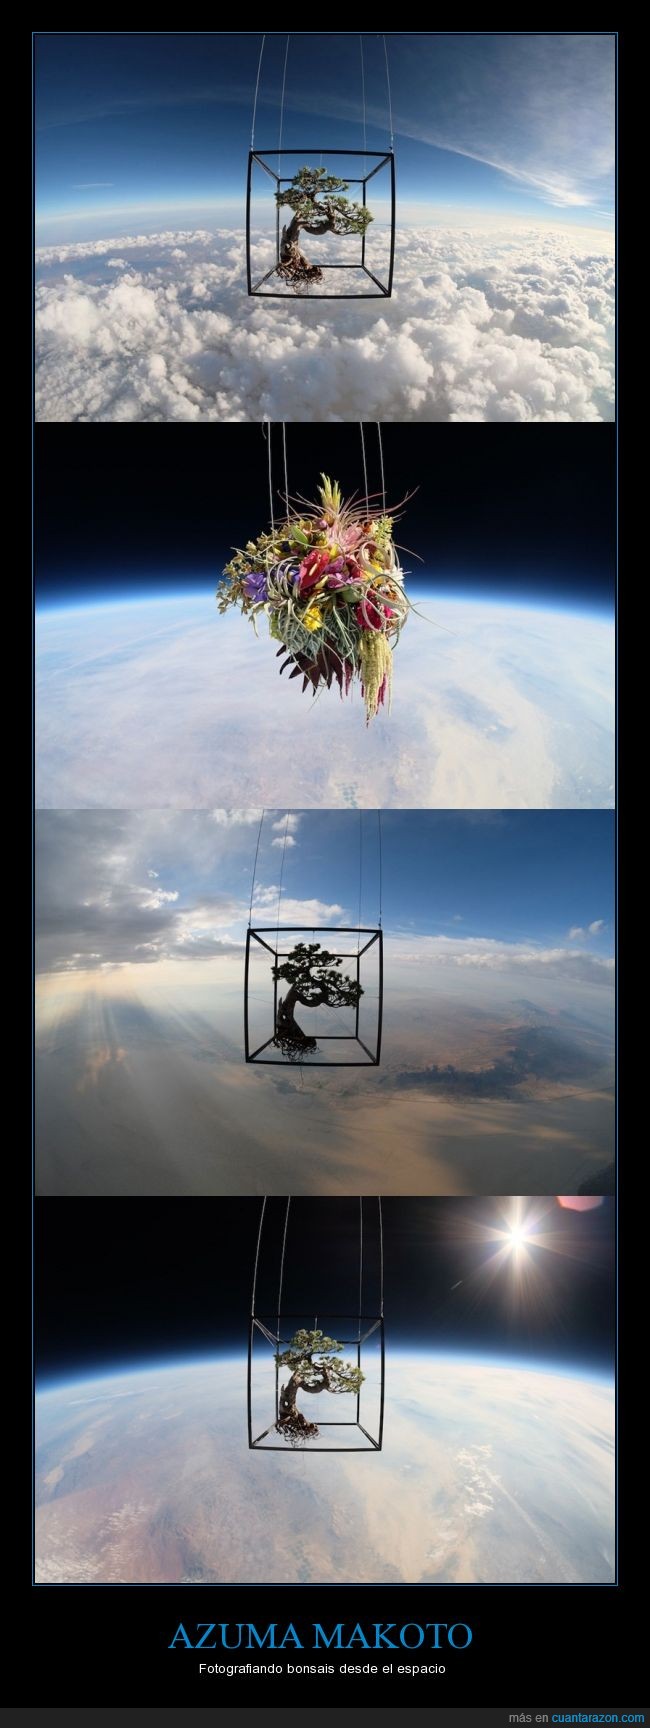 azuma makoto,arte,bonsais,globo,helio,espacio